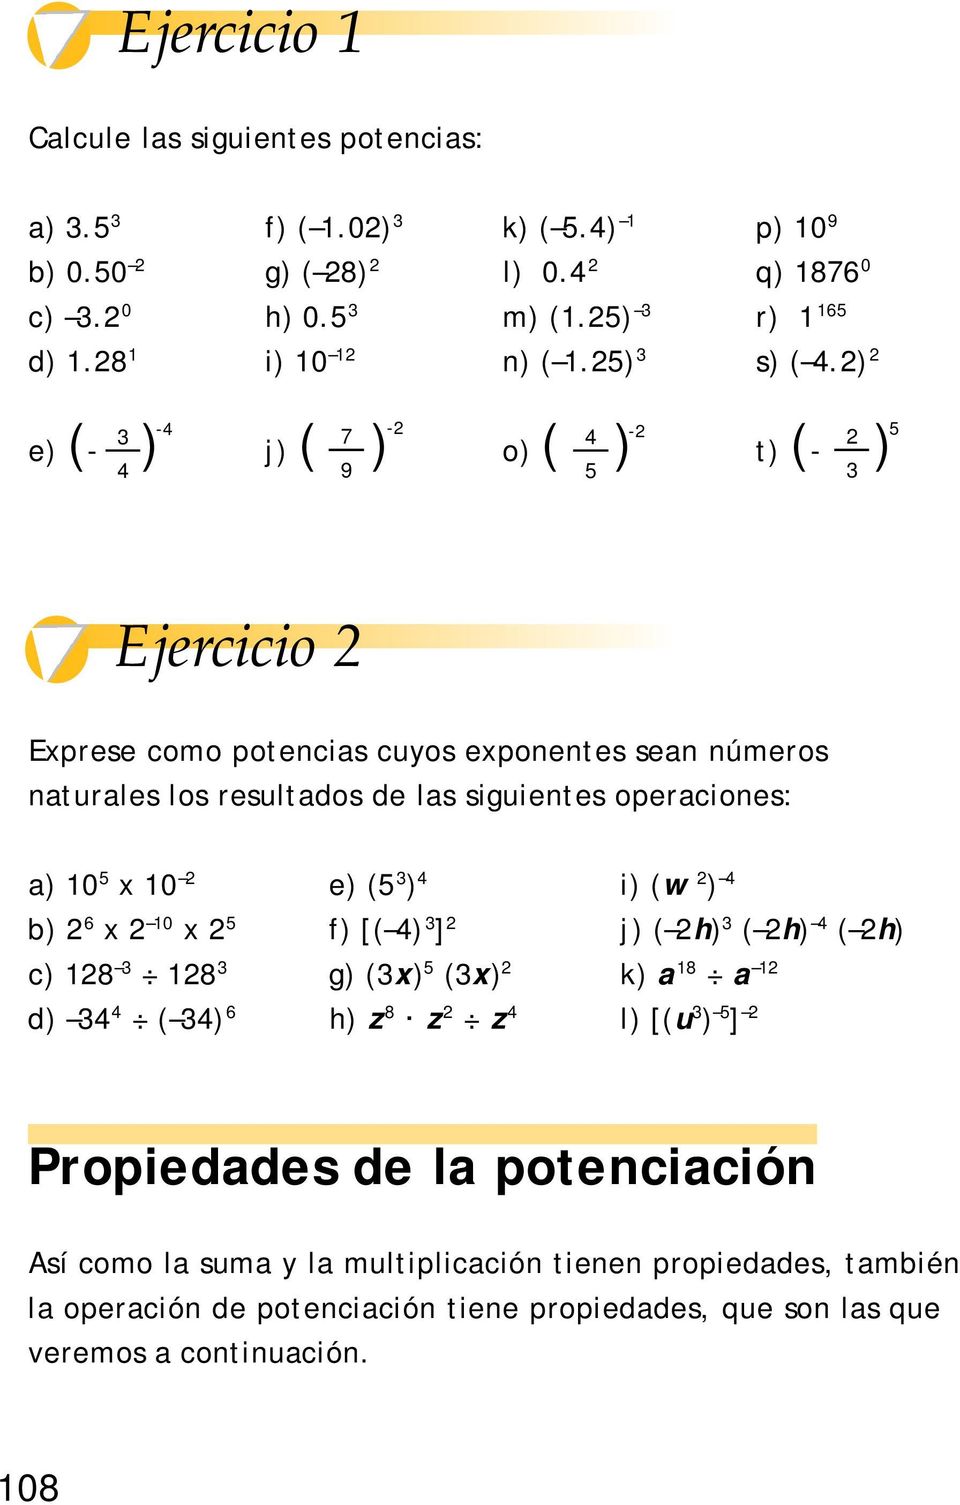 ) -4-3 7 4 - e) (- ) j) ( ) o) ( ) t) (- ) 4 9 5 3 5 Ejercicio Exprese como potencias cuyos exponentes sean números naturales los resultados de las siguientes operaciones: a) 0 5